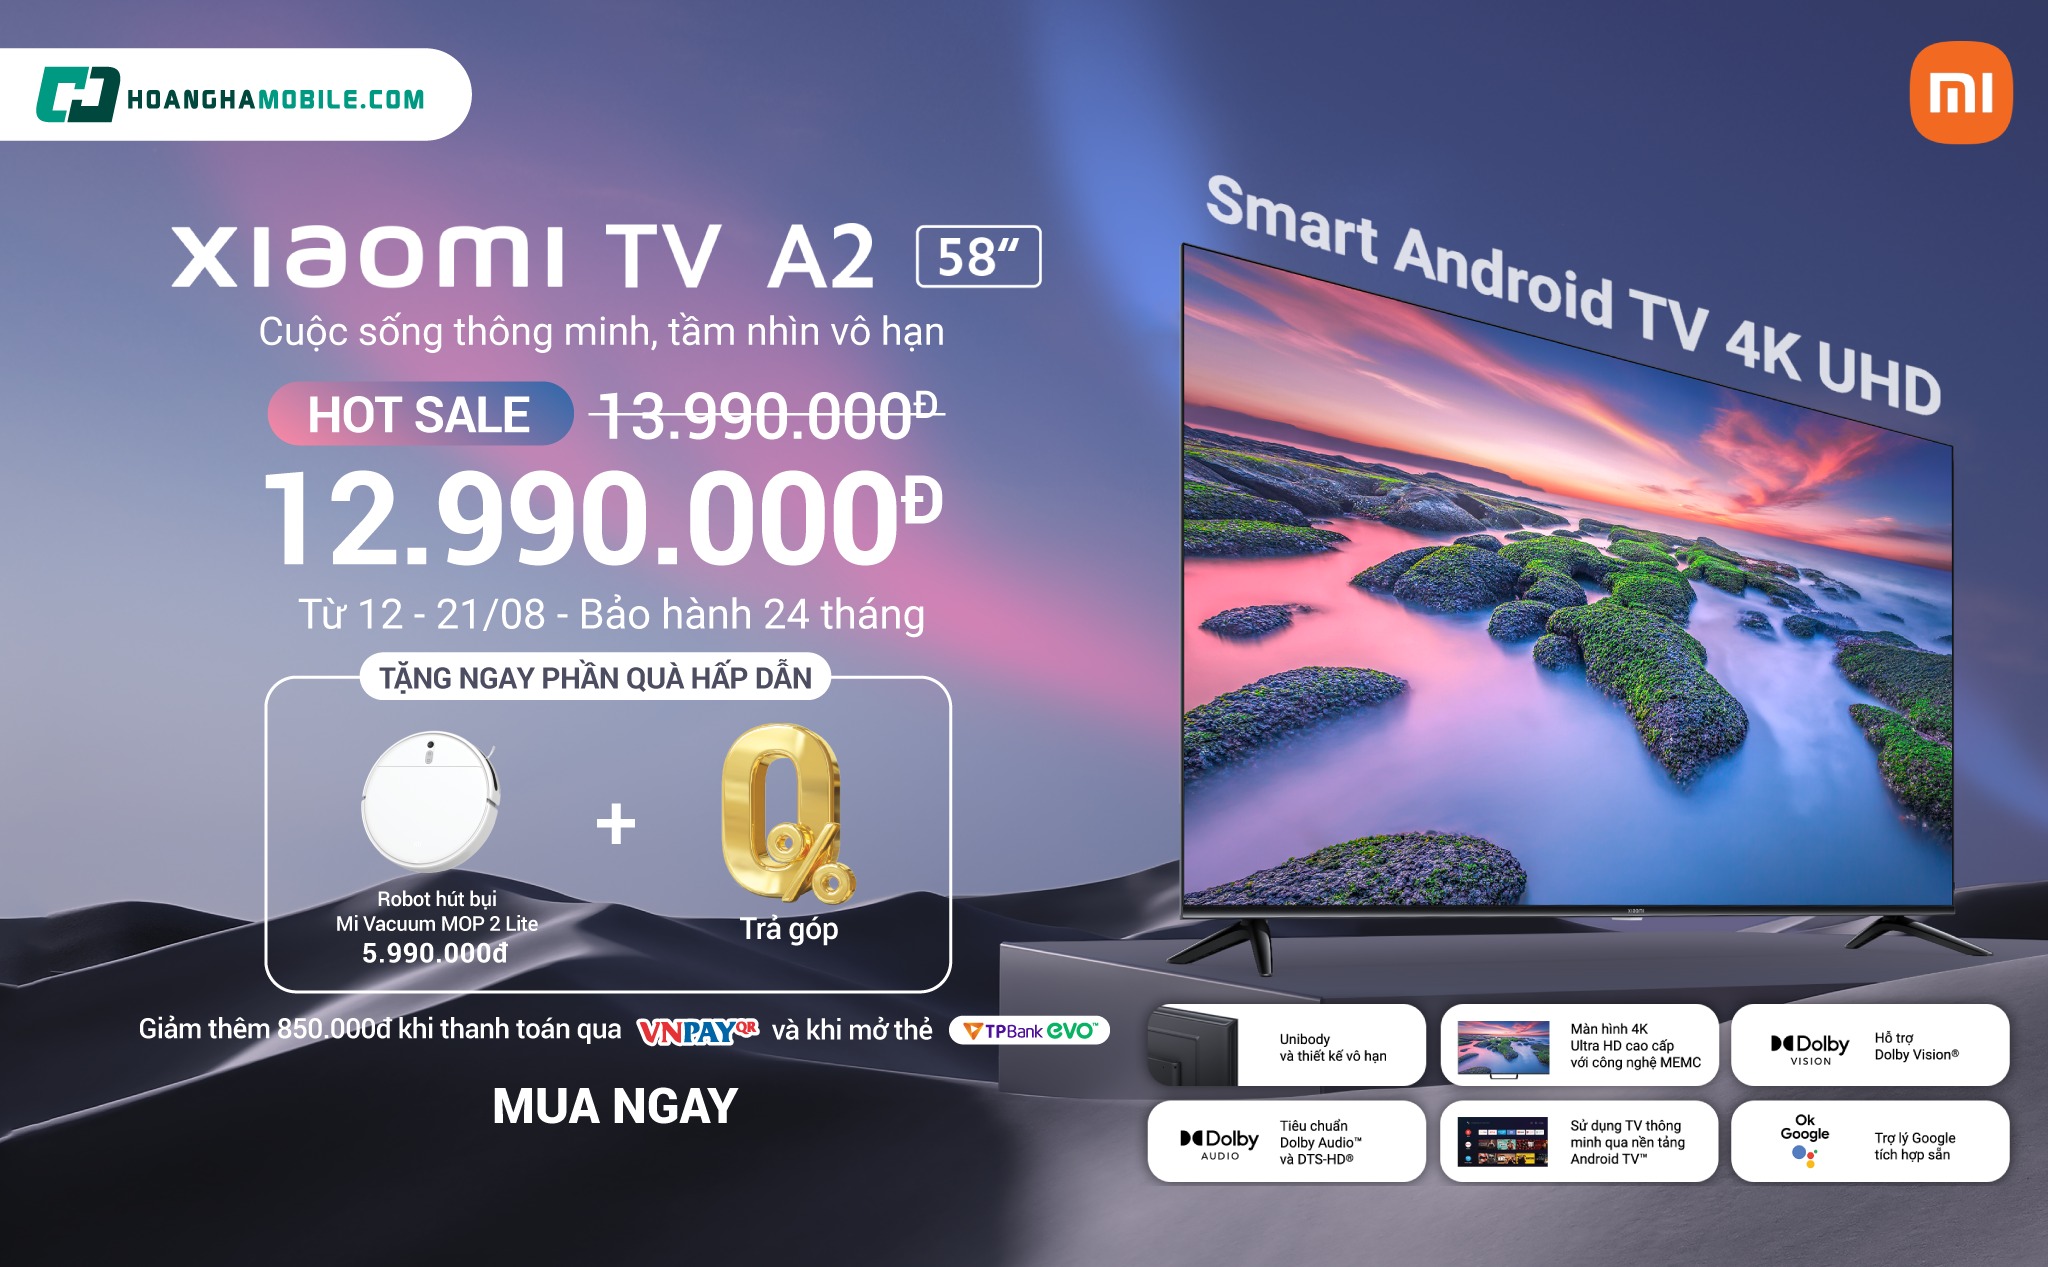 [QC] Mở bán siêu phẩm Smart TV 4K Xiaomi A2 - 58 inch. Ưu đãI tới 7 triệu đồng tại Hoàng Hà Mobile